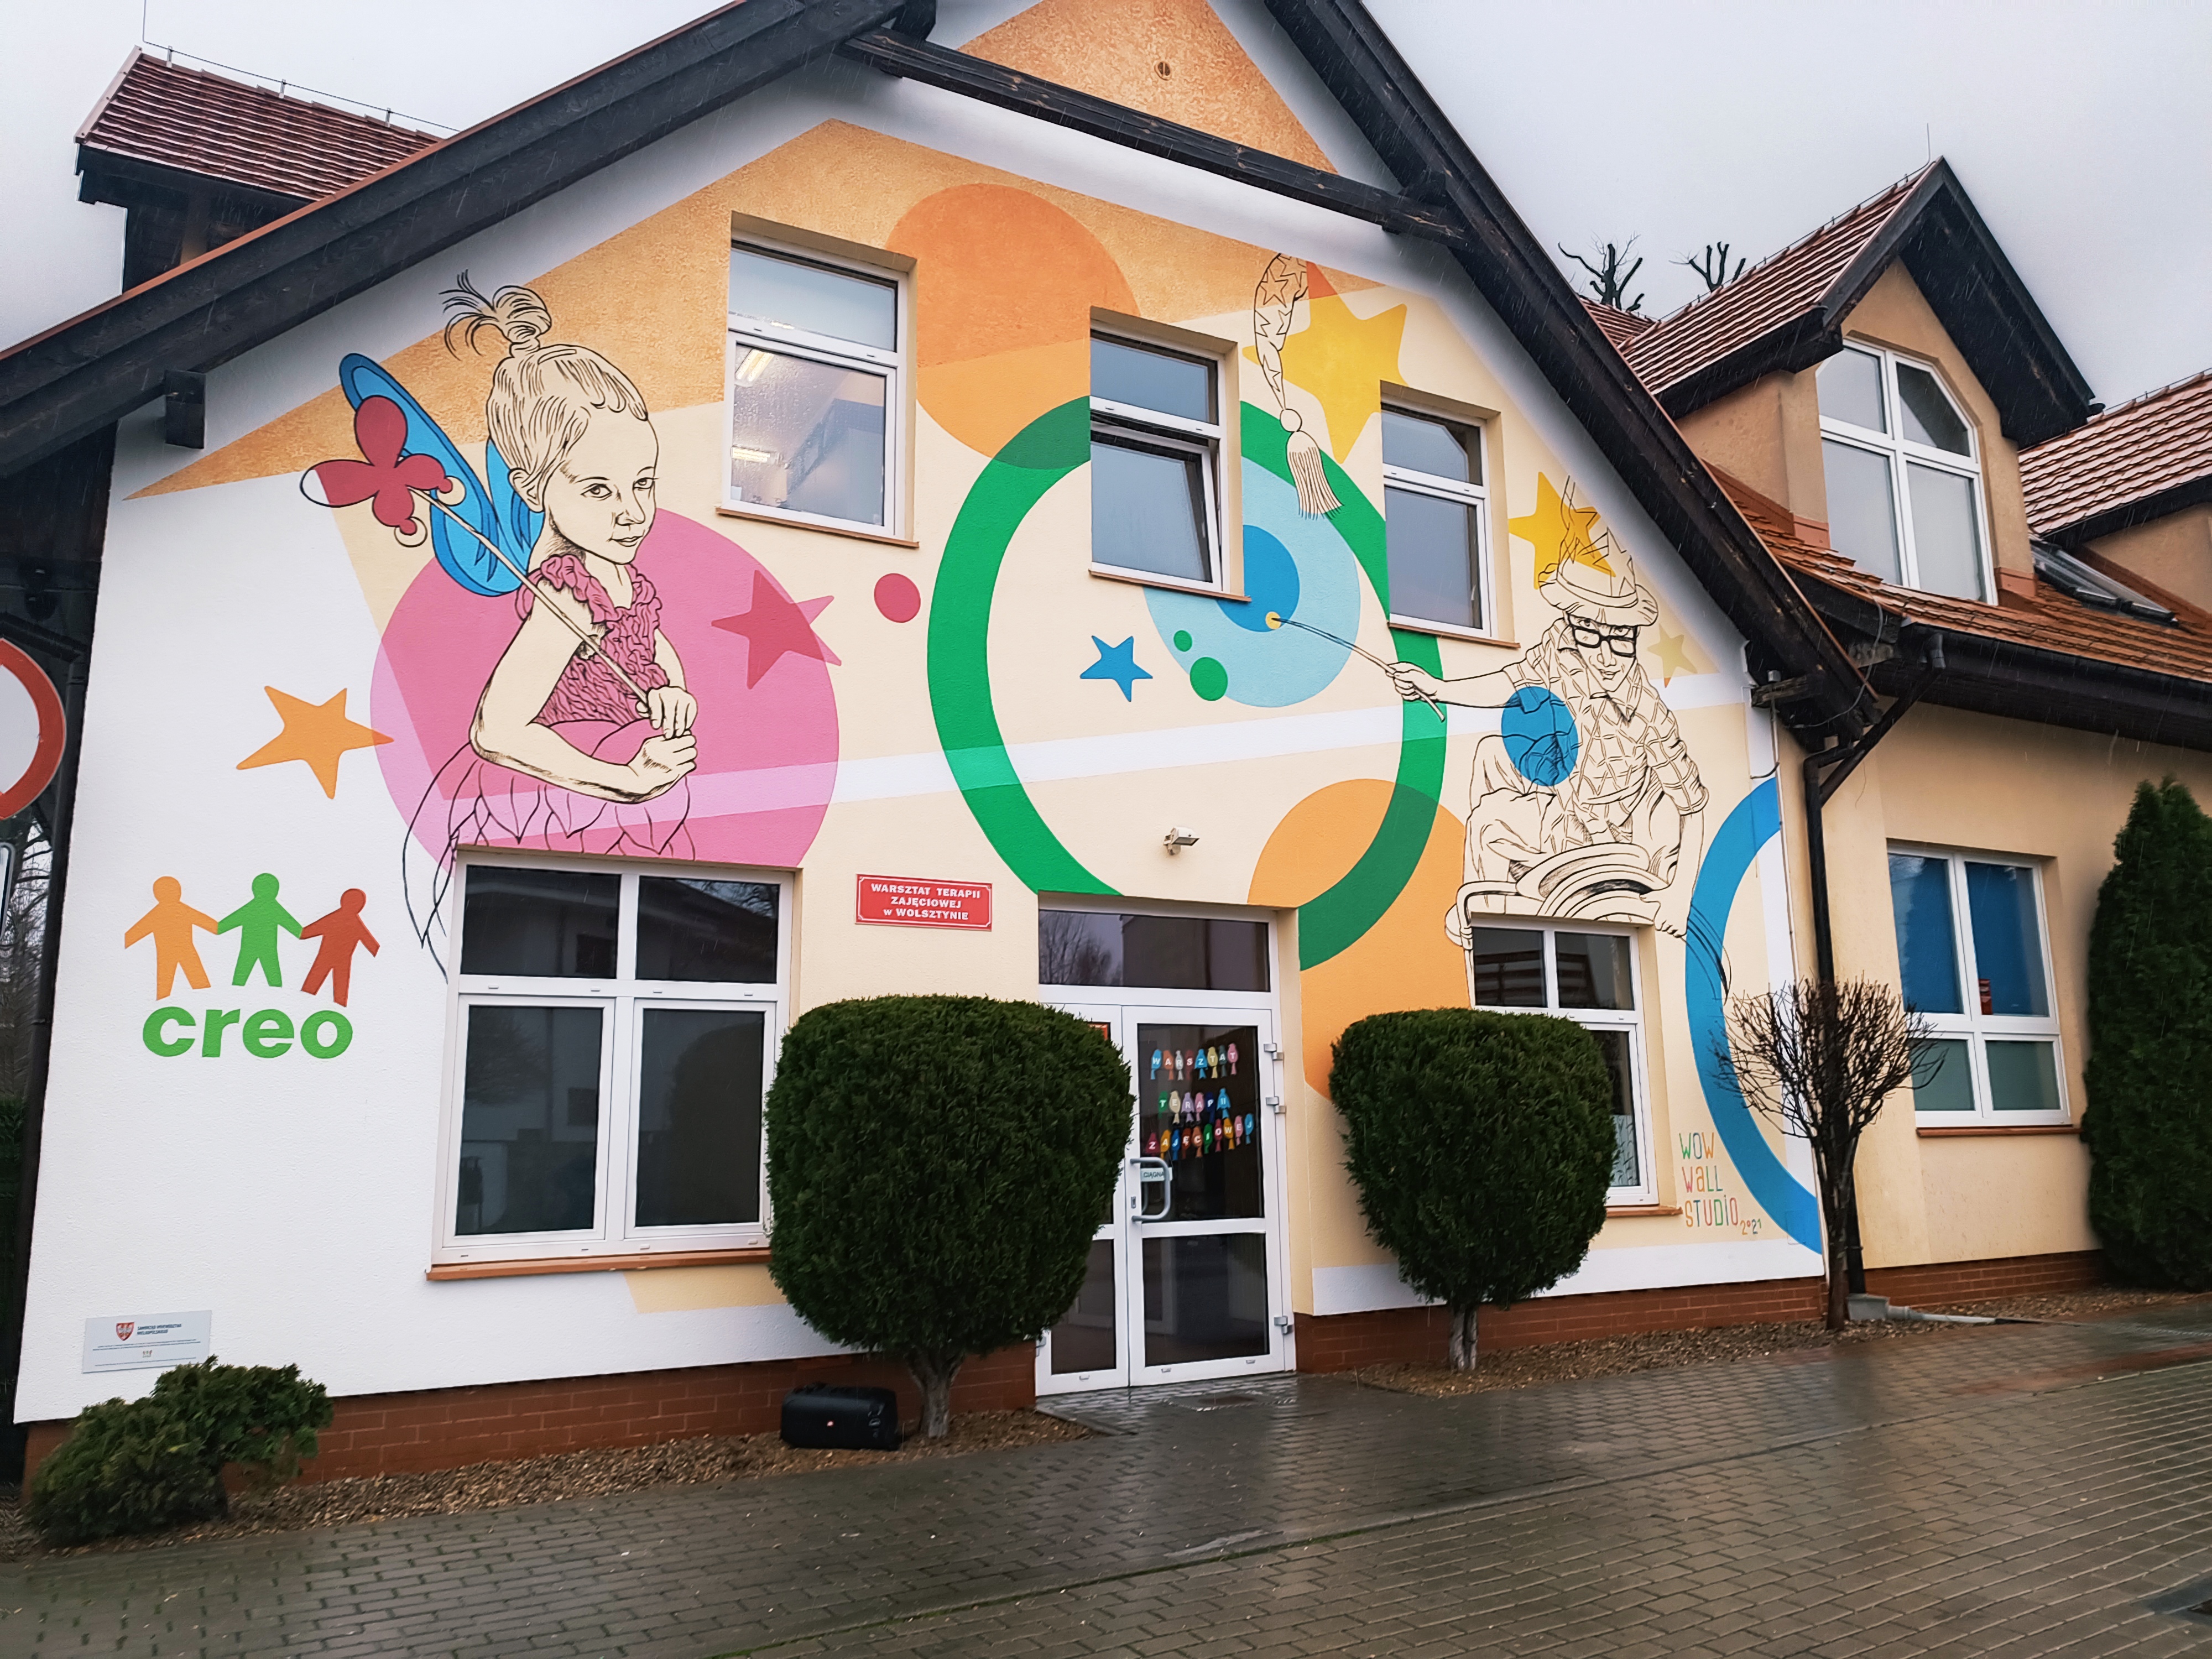 Kolorowy i wesoły mural na budynku prezentujący dzieciaki z niepełnnosprawnościami.